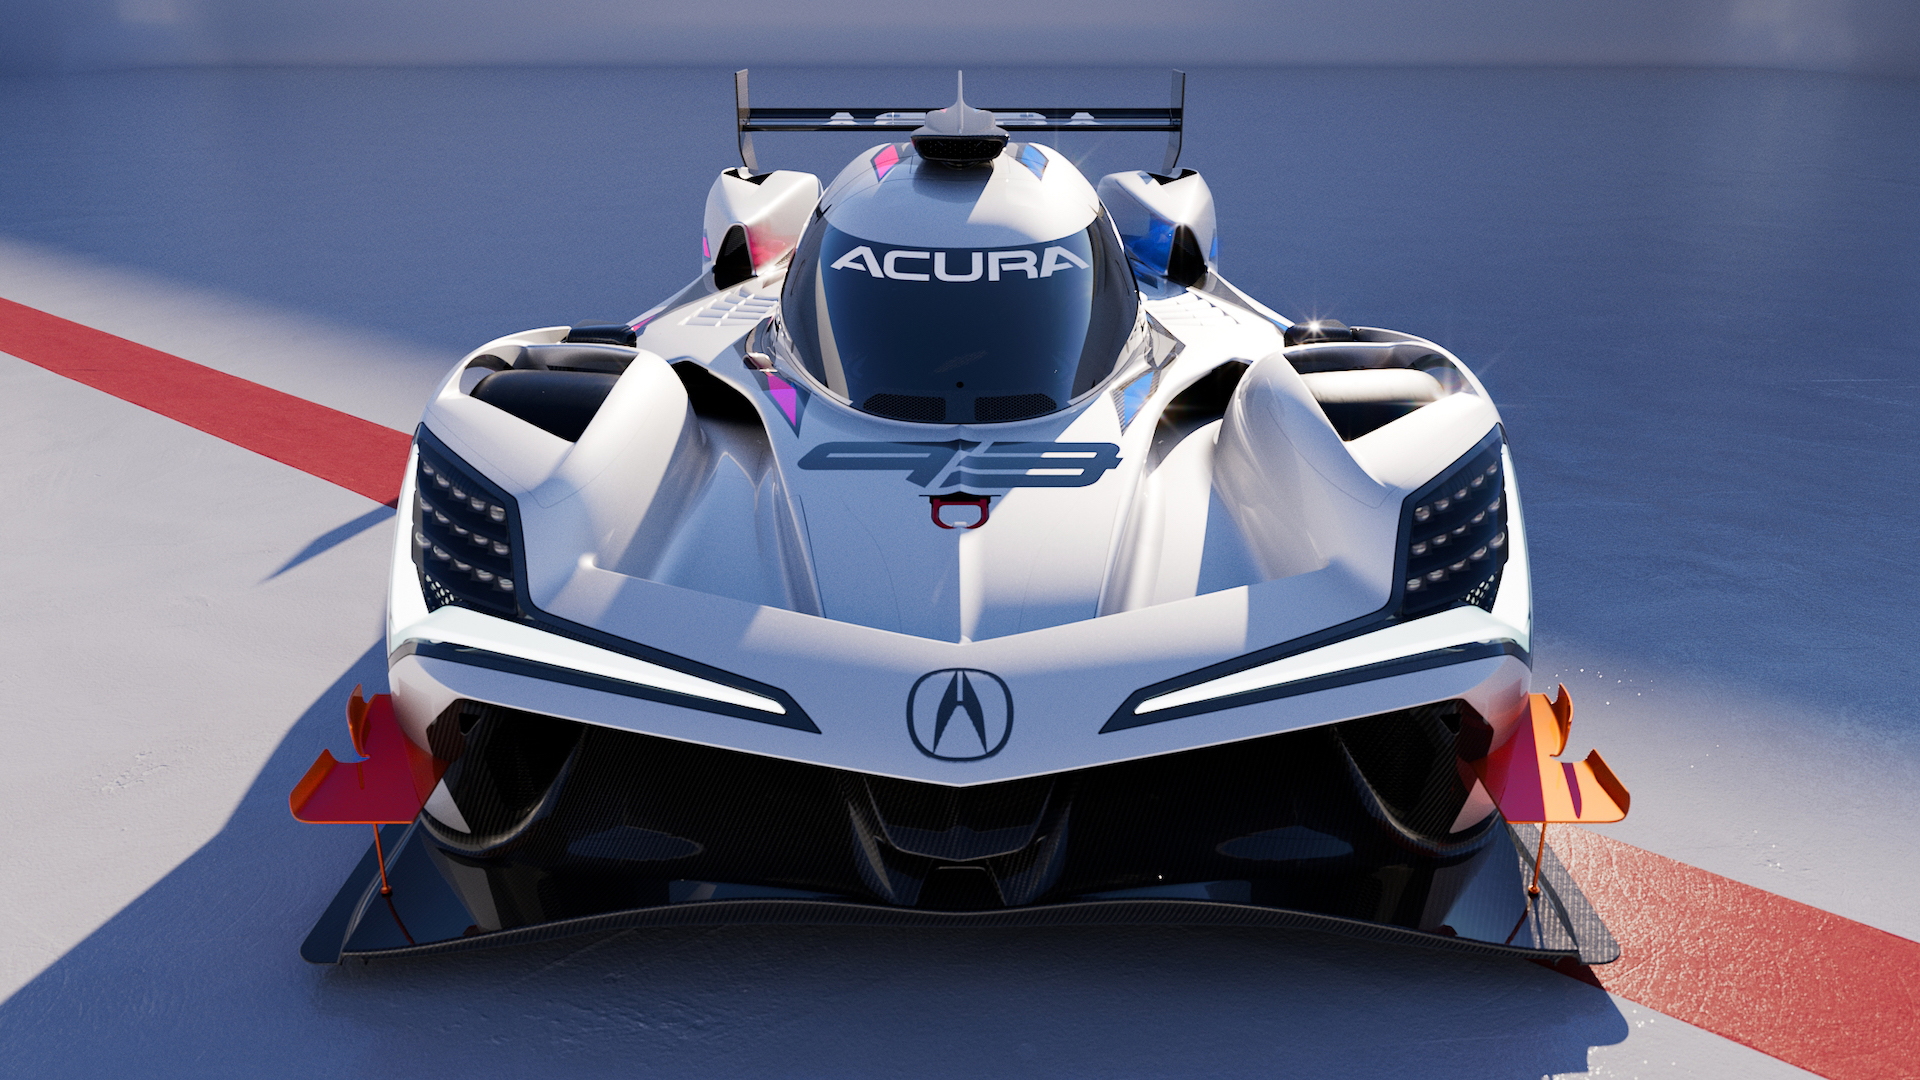 Acura ARX-06 race car